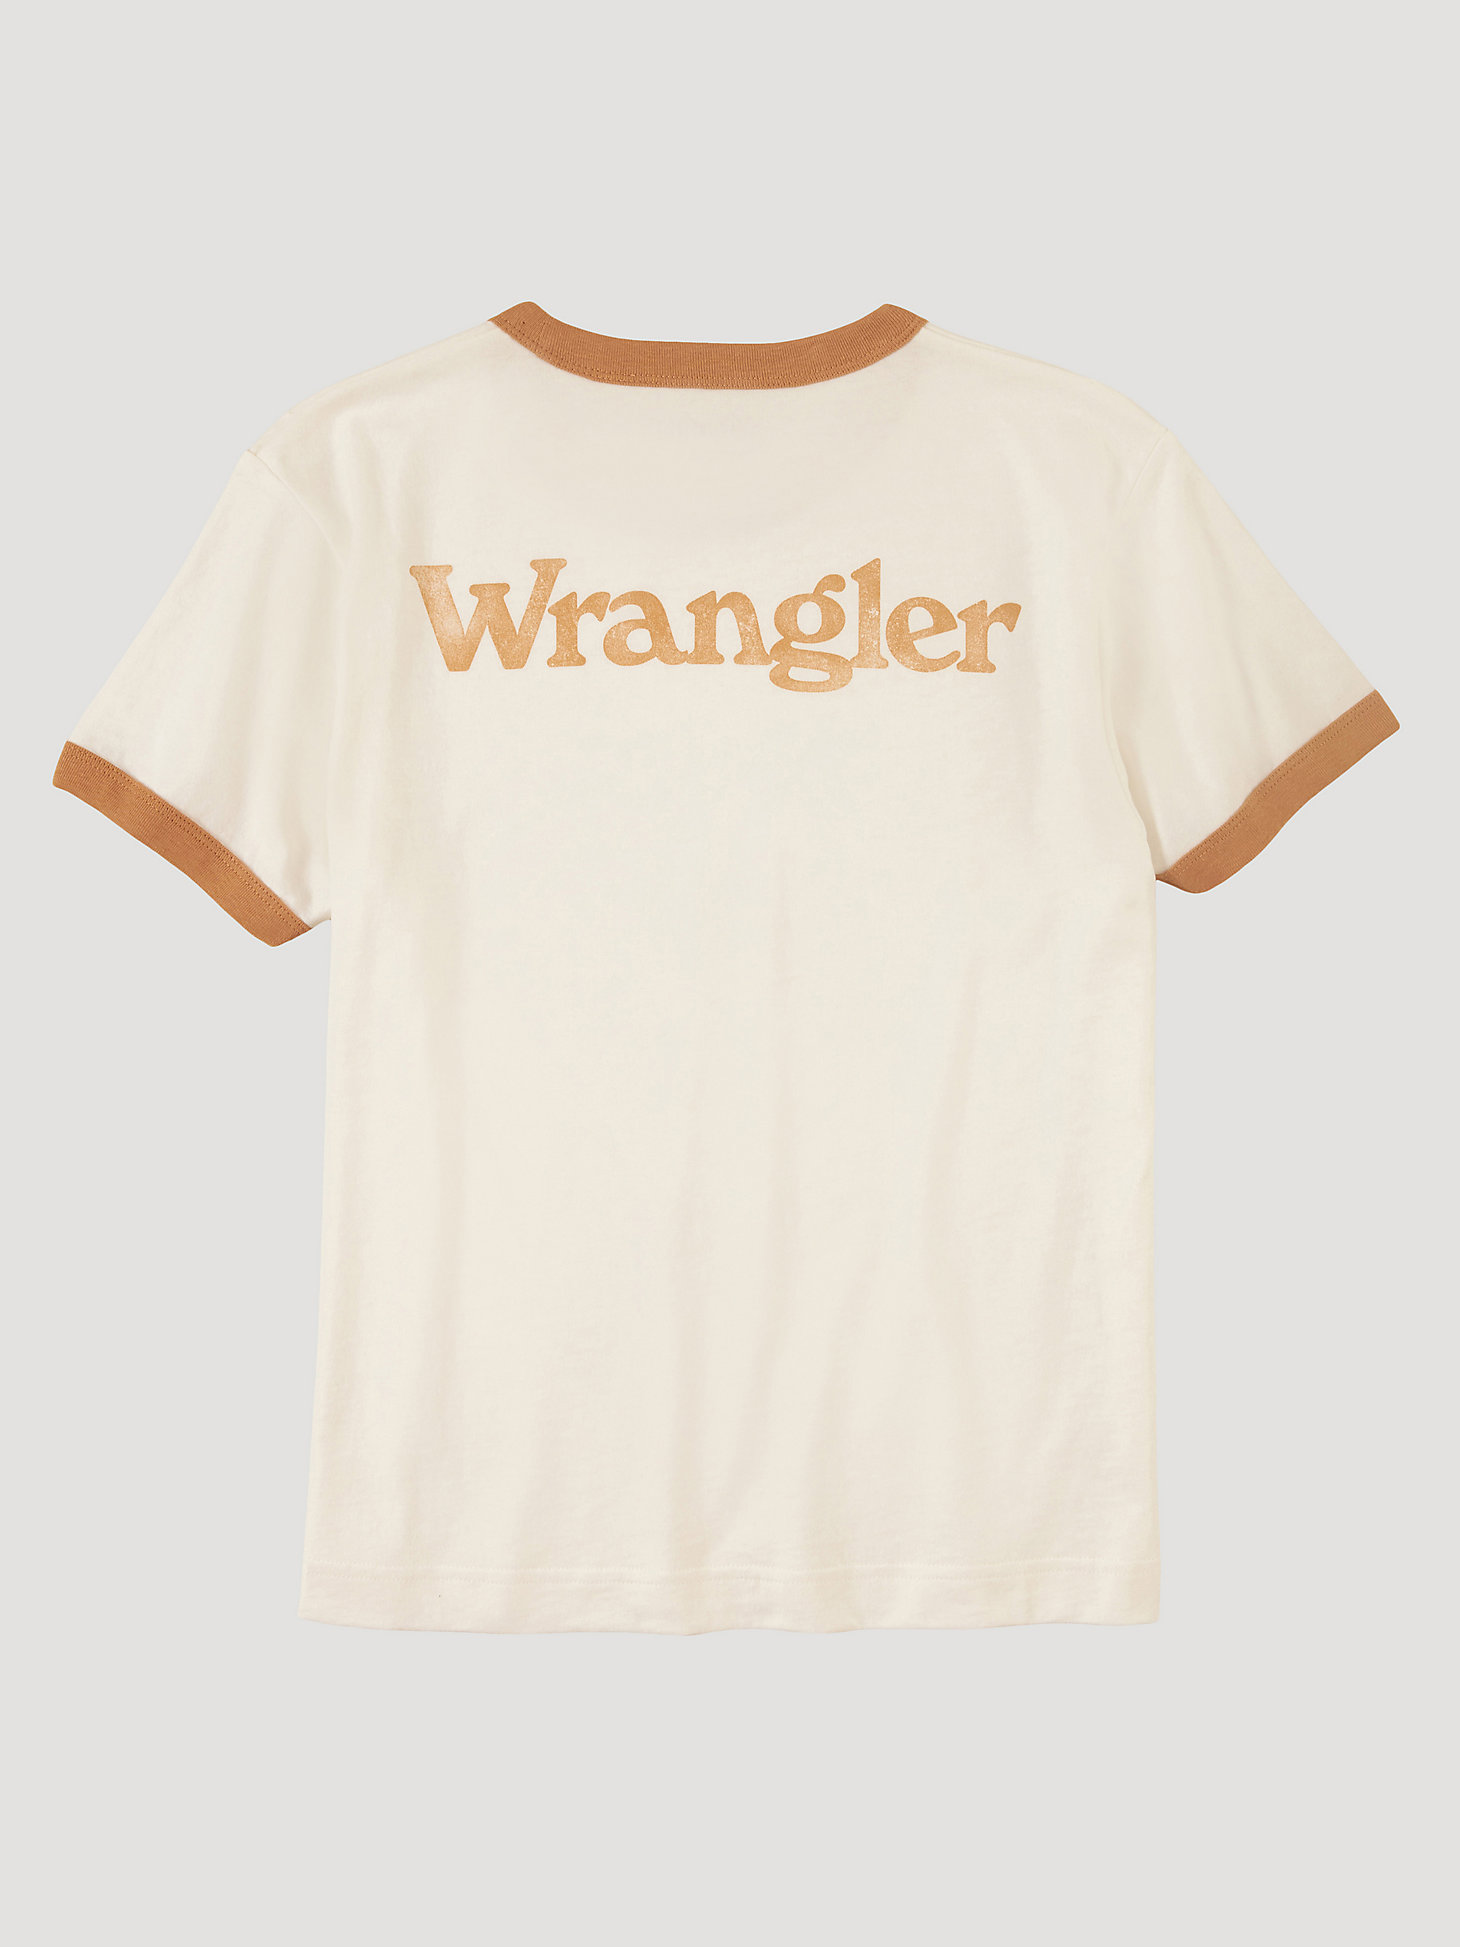 Wrangler Ringer Tee Shirt Femme